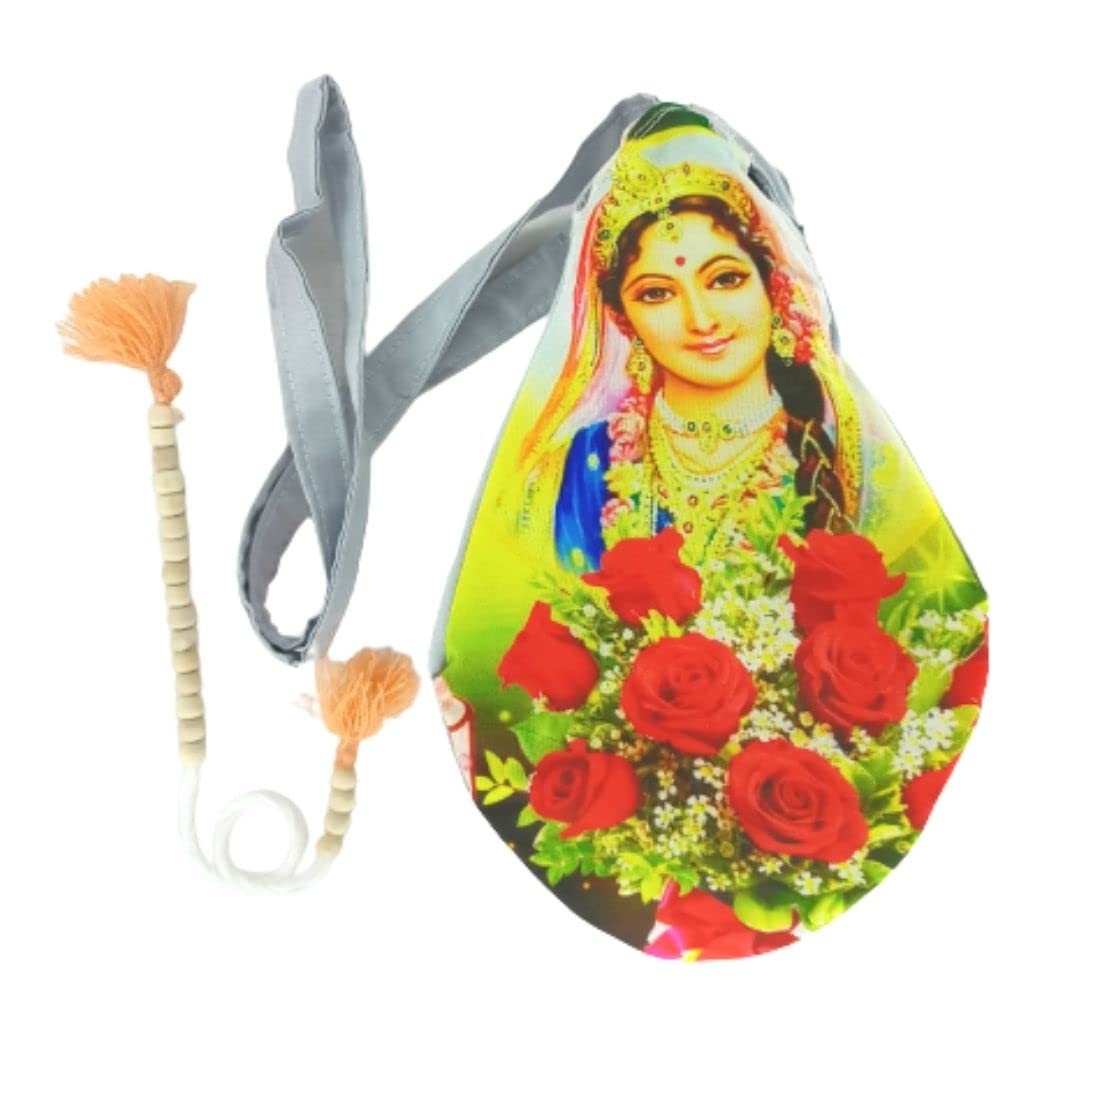 MAYAPURI MATA Printed Beads Bag/Chanting Bag with Sakshi Mala Counter